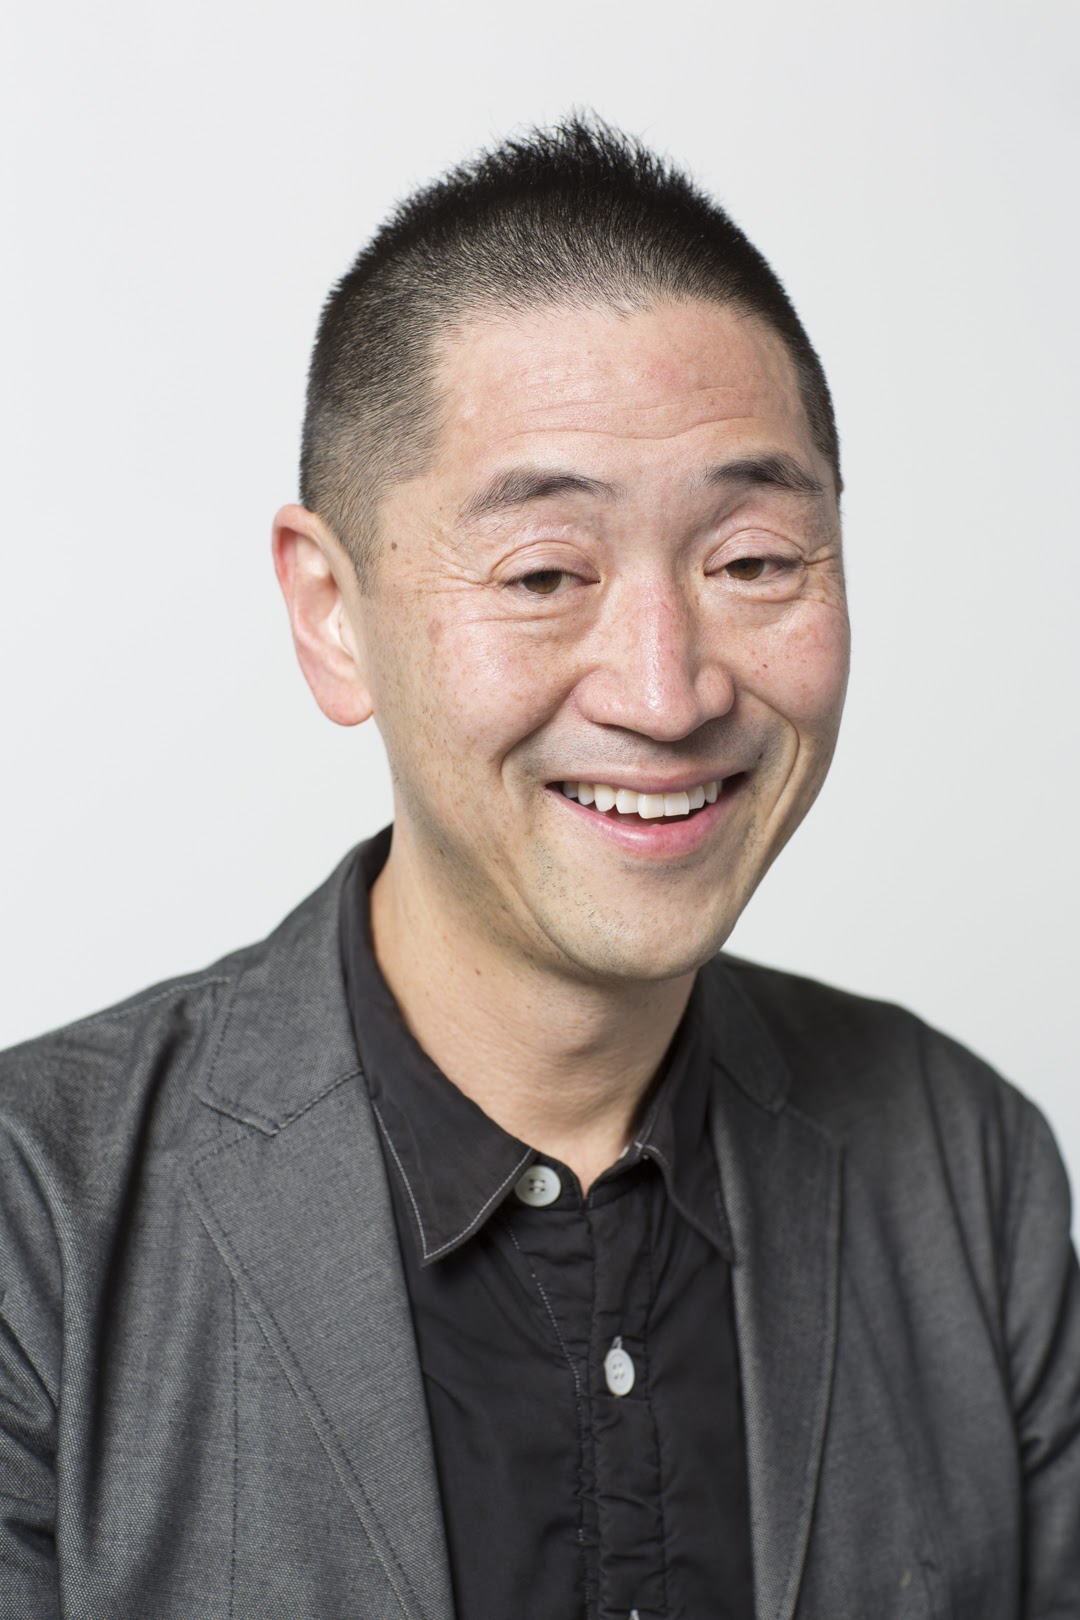 Headshot of Ken Tadashi Oshima, he's wearing a black shirt and grey jacket